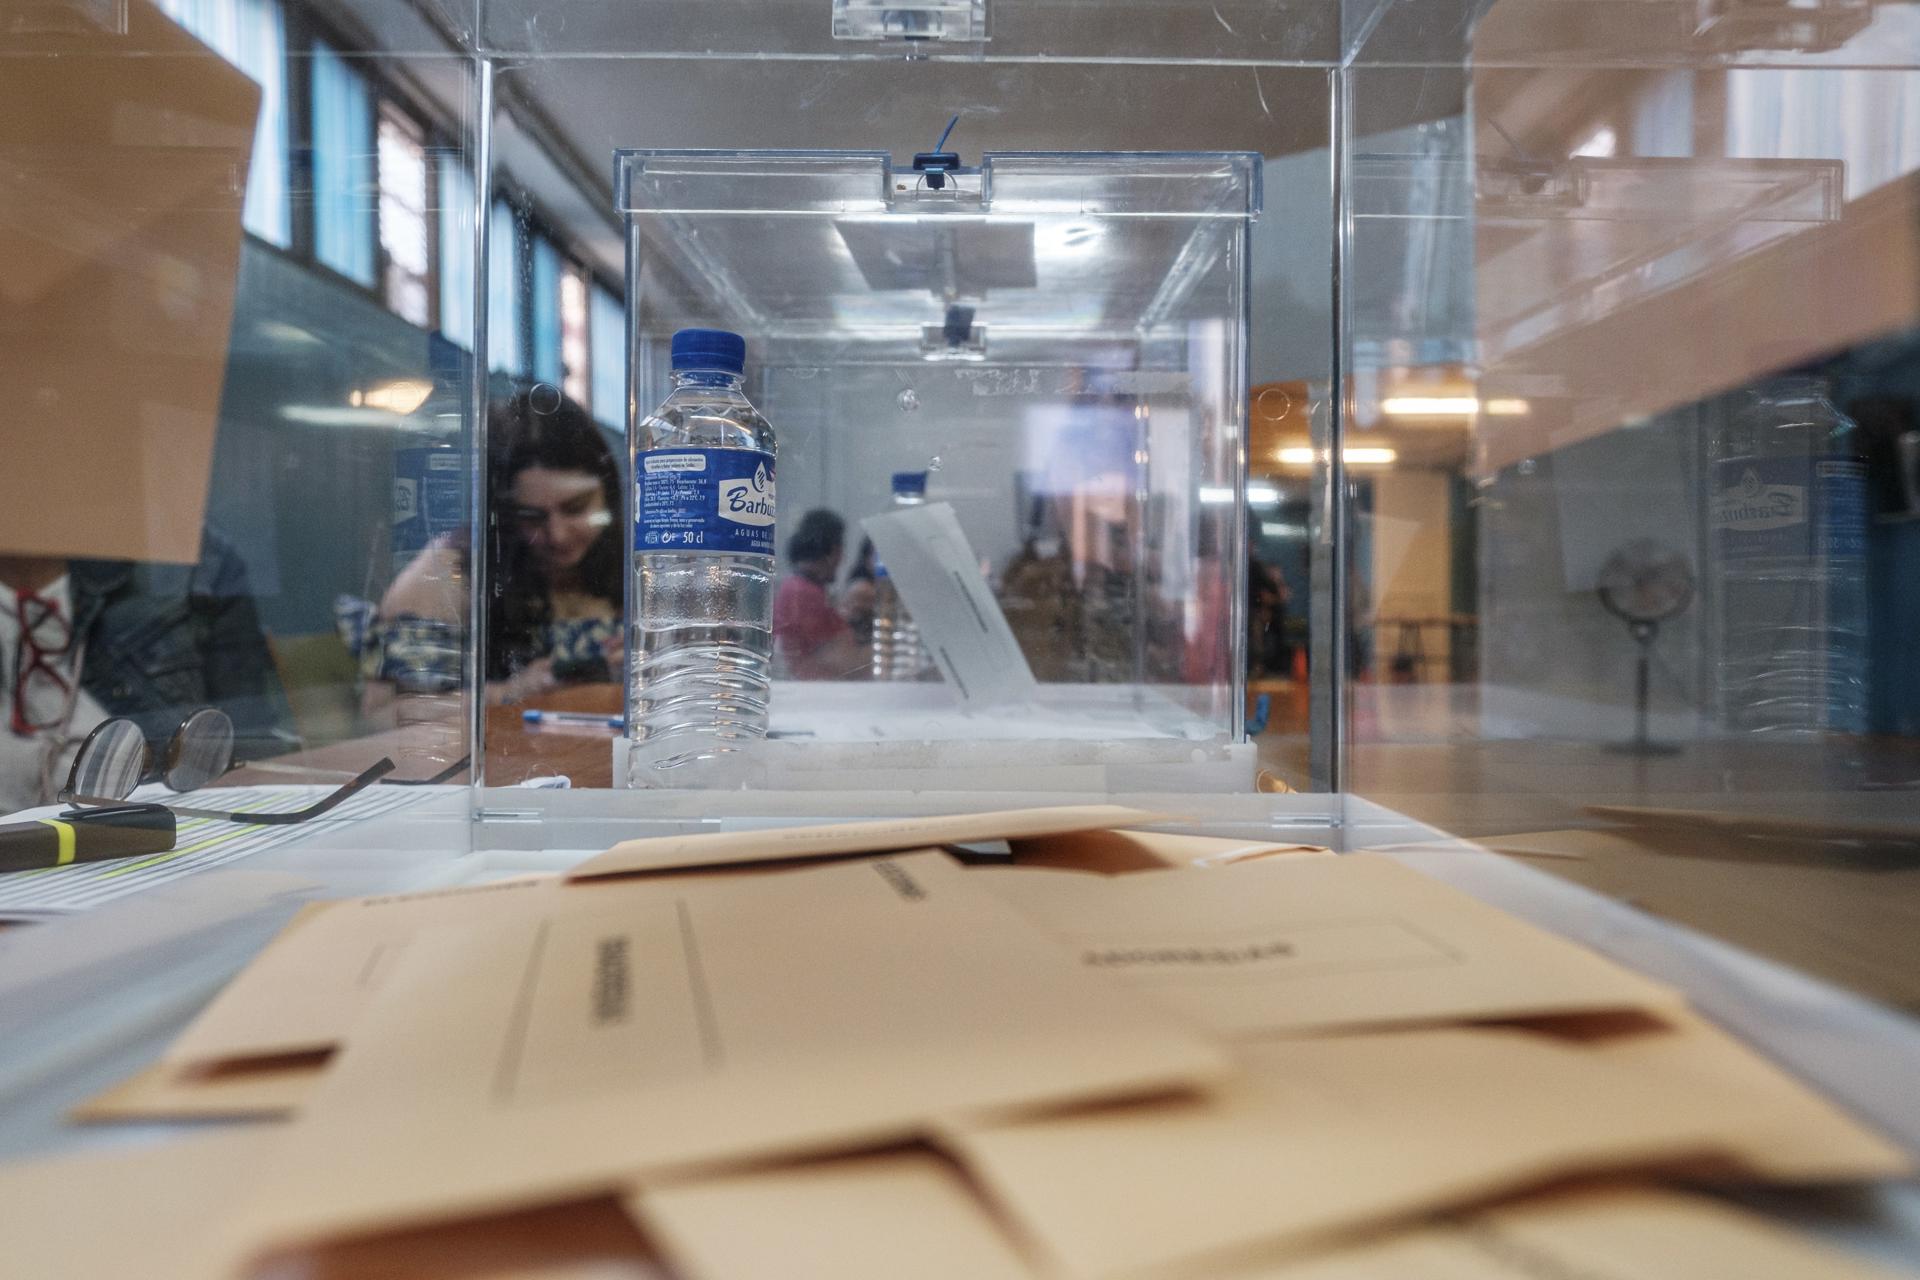 Numerosos sobres de voto al Senado depositados ya en su urna correspondiente en un colegio electoral en Las Palmas de Gran Canaria. EFE/ Ángel Medina G.